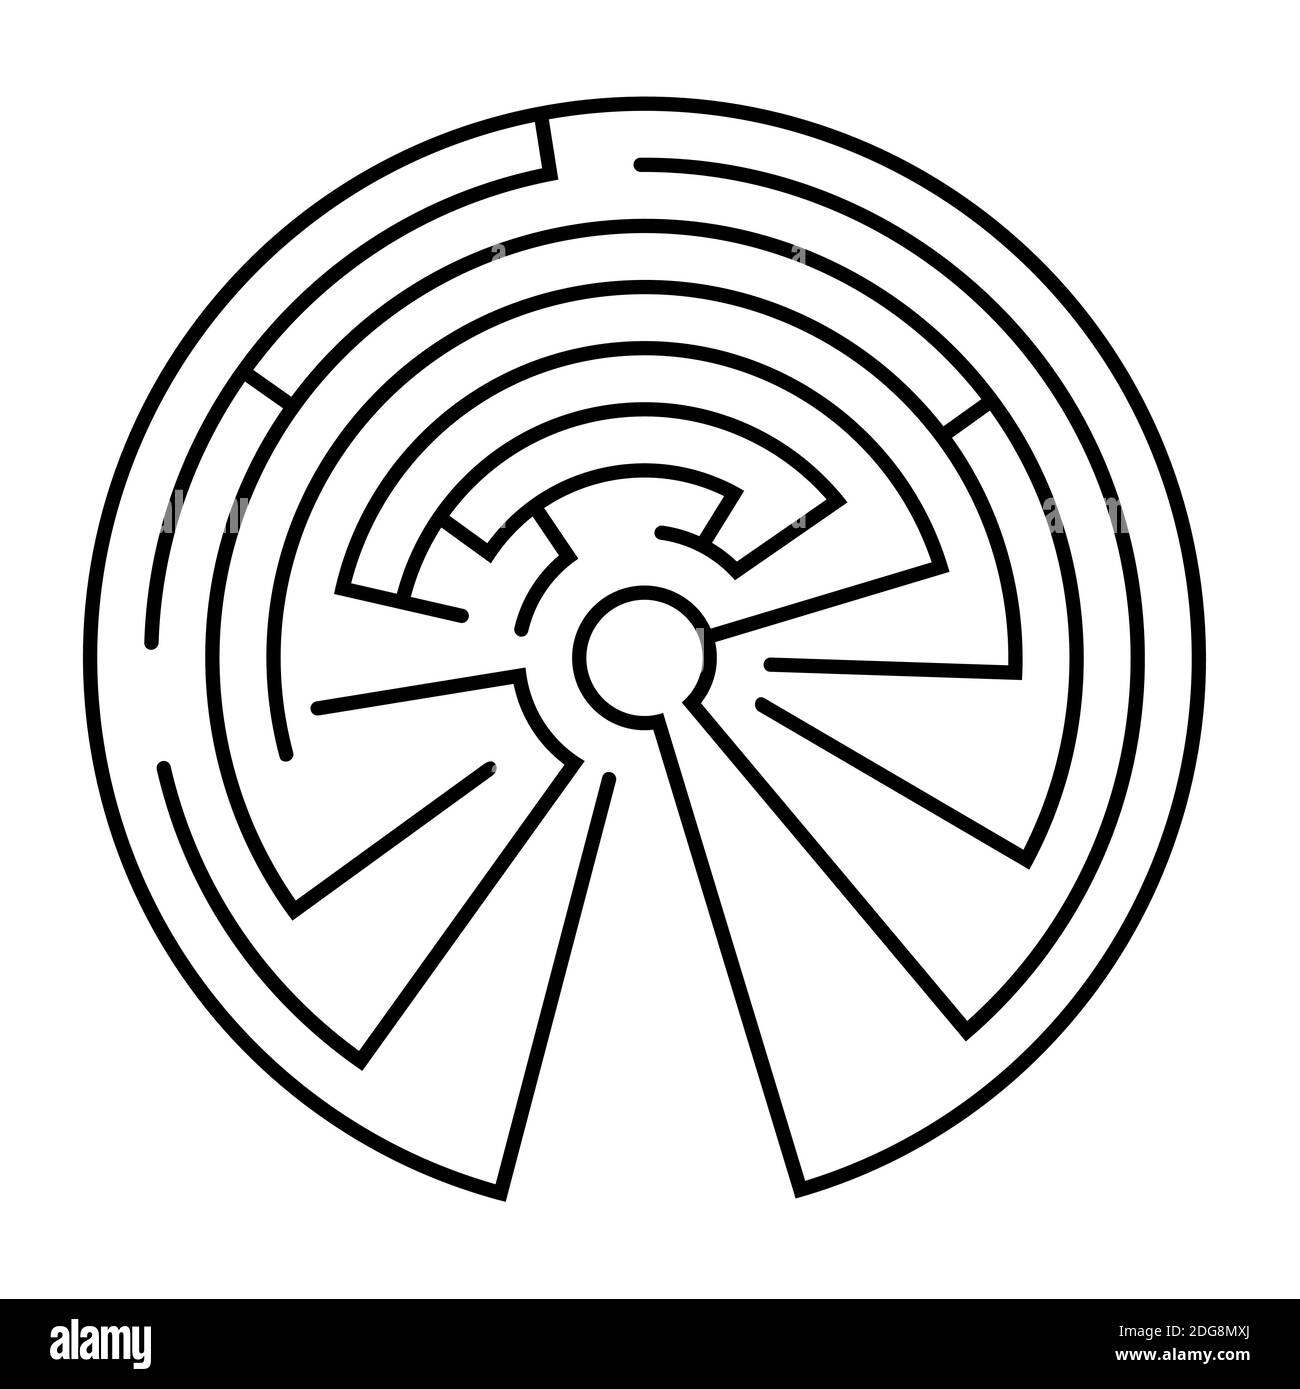 Labyrinthe dans la forme d'un cercle - vecteur Illustration de Vecteur